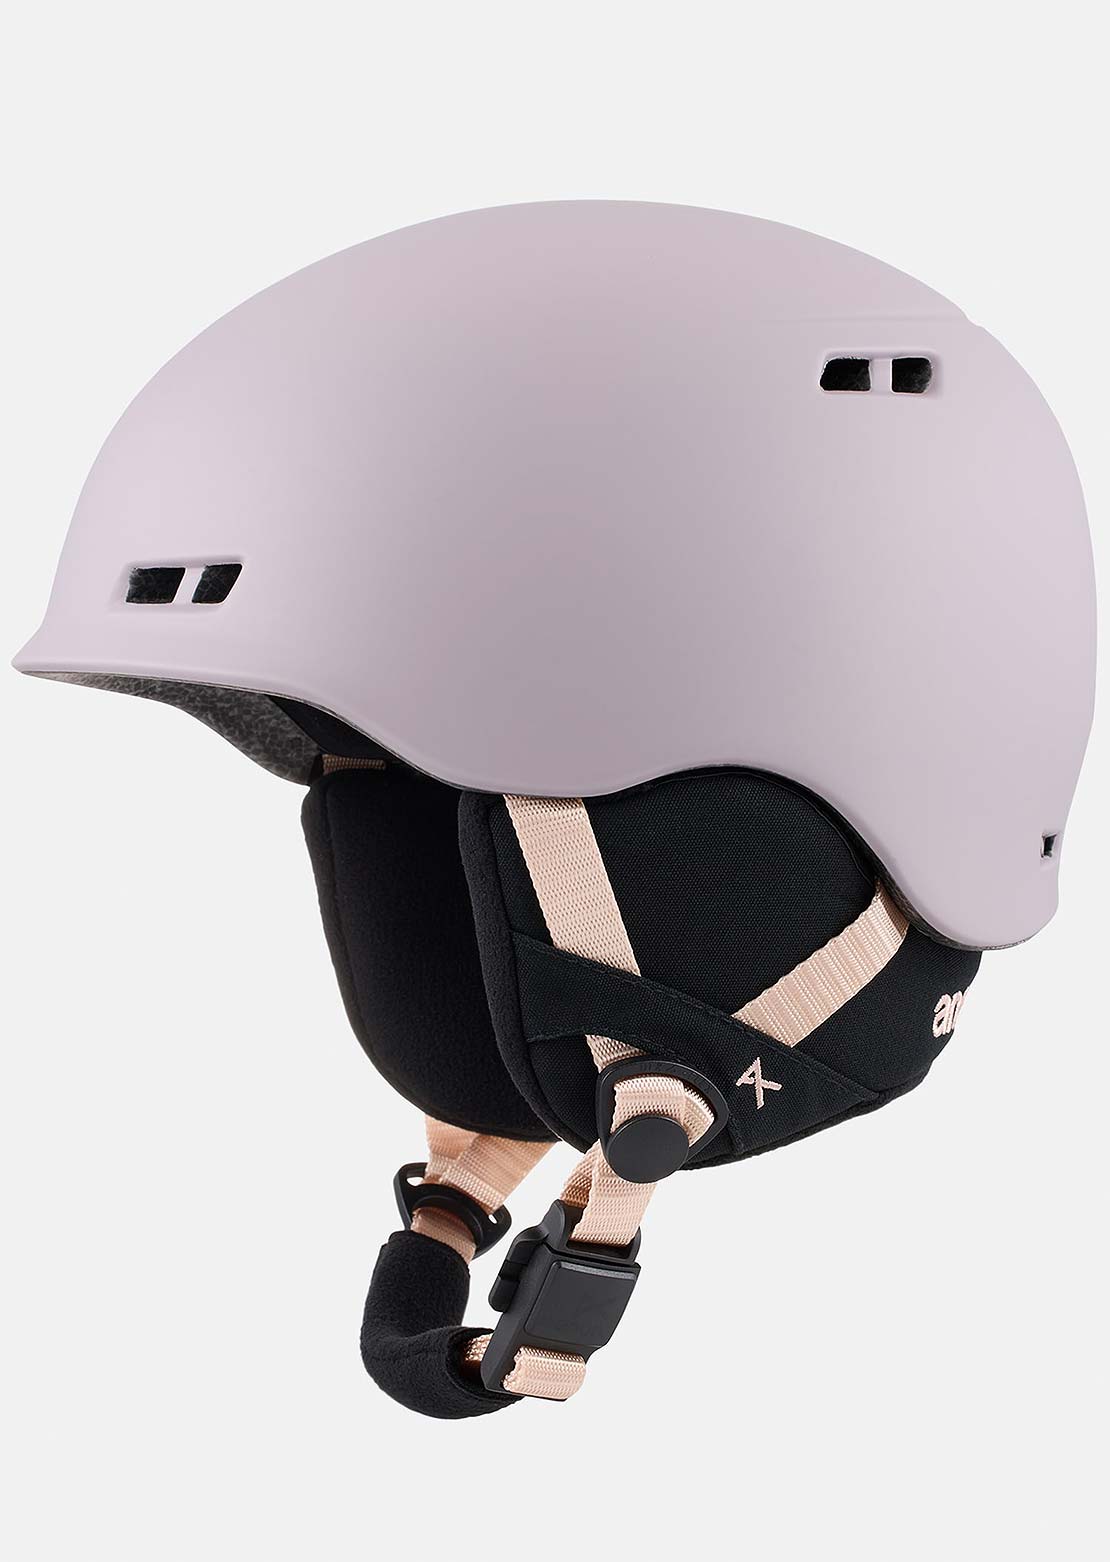 Anon Junior Burner Helmet Elderberry